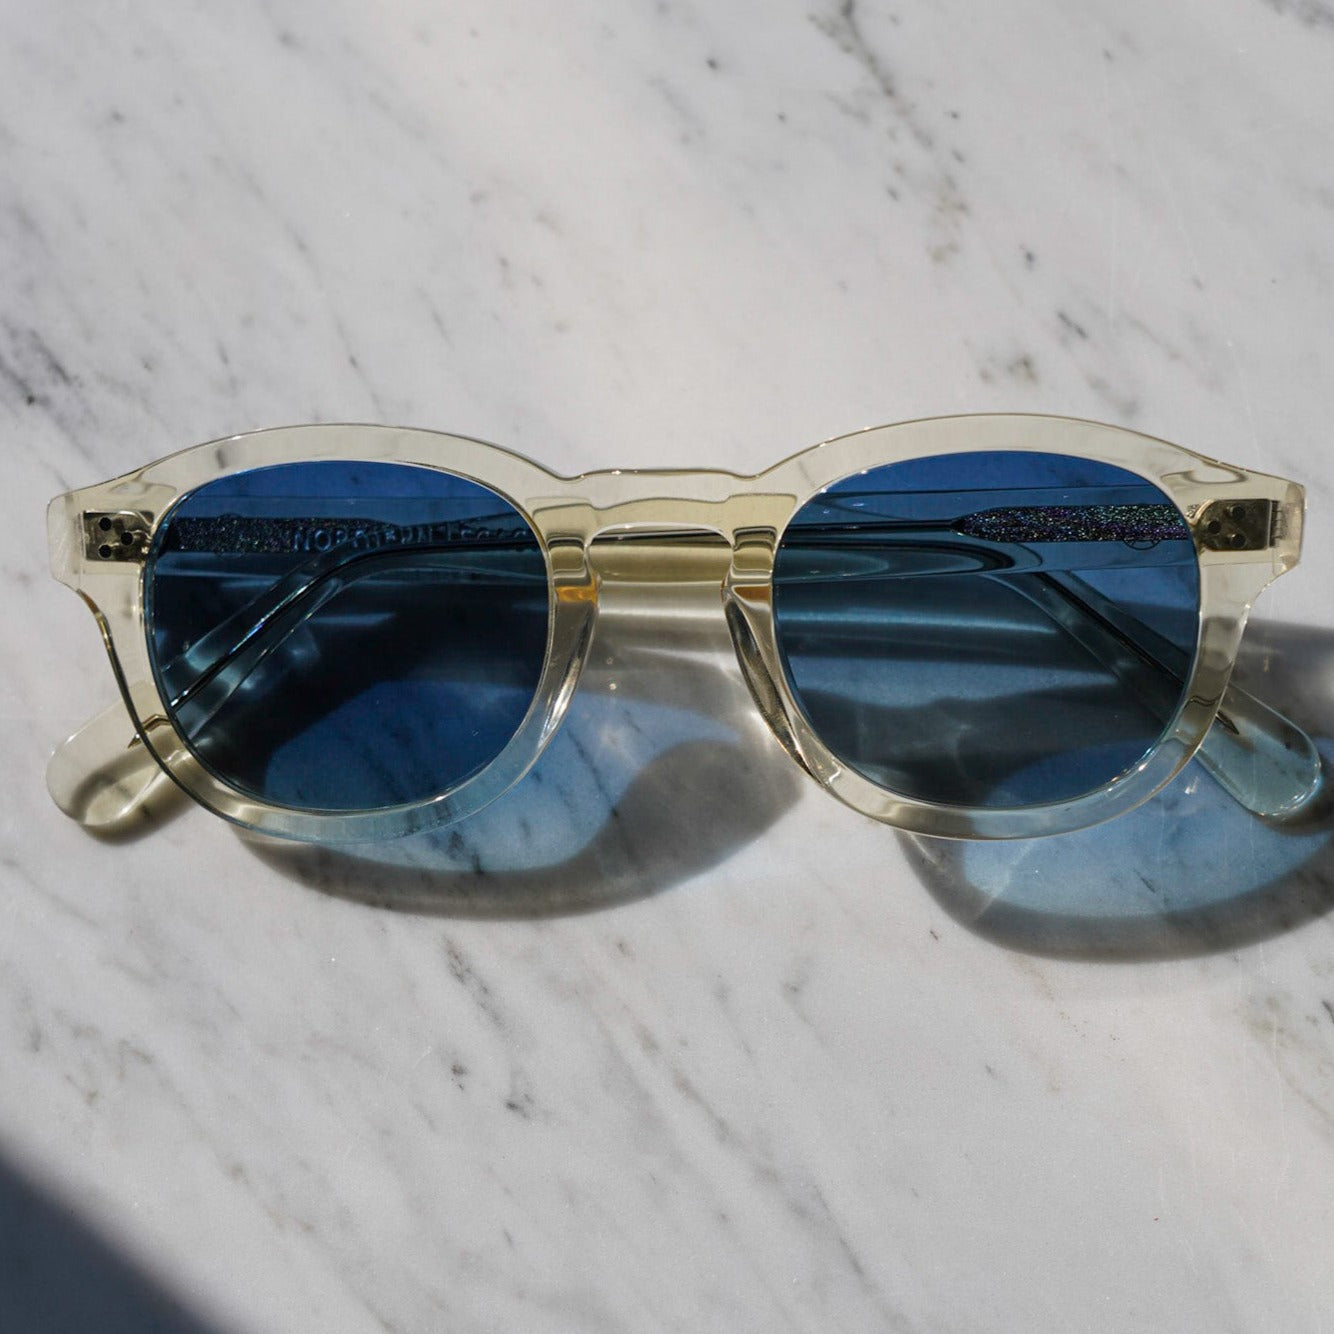 Legacy solbriller - Champagne blå